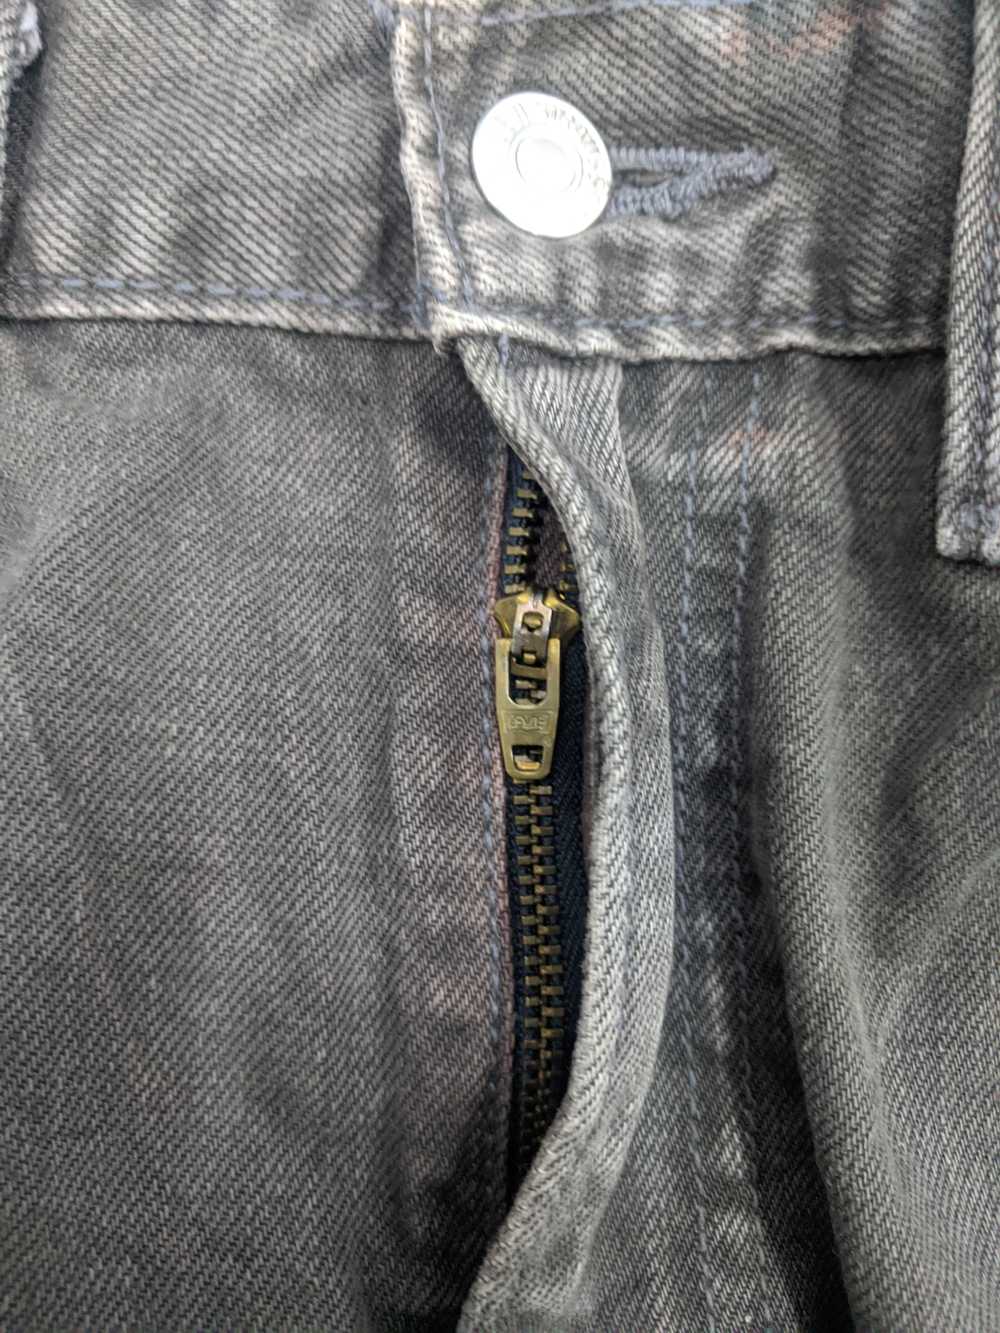 Vintage - Vintage Levis 505 Light Wash Jeans - image 8